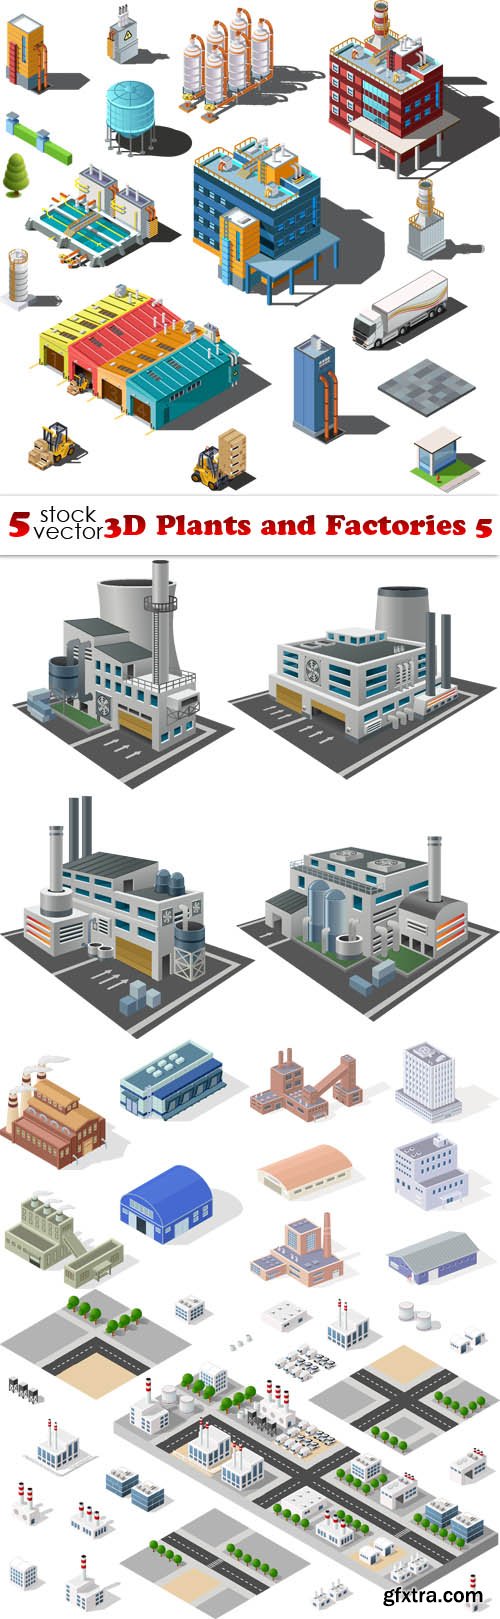 Vectors - 3D Plants and Factories 5